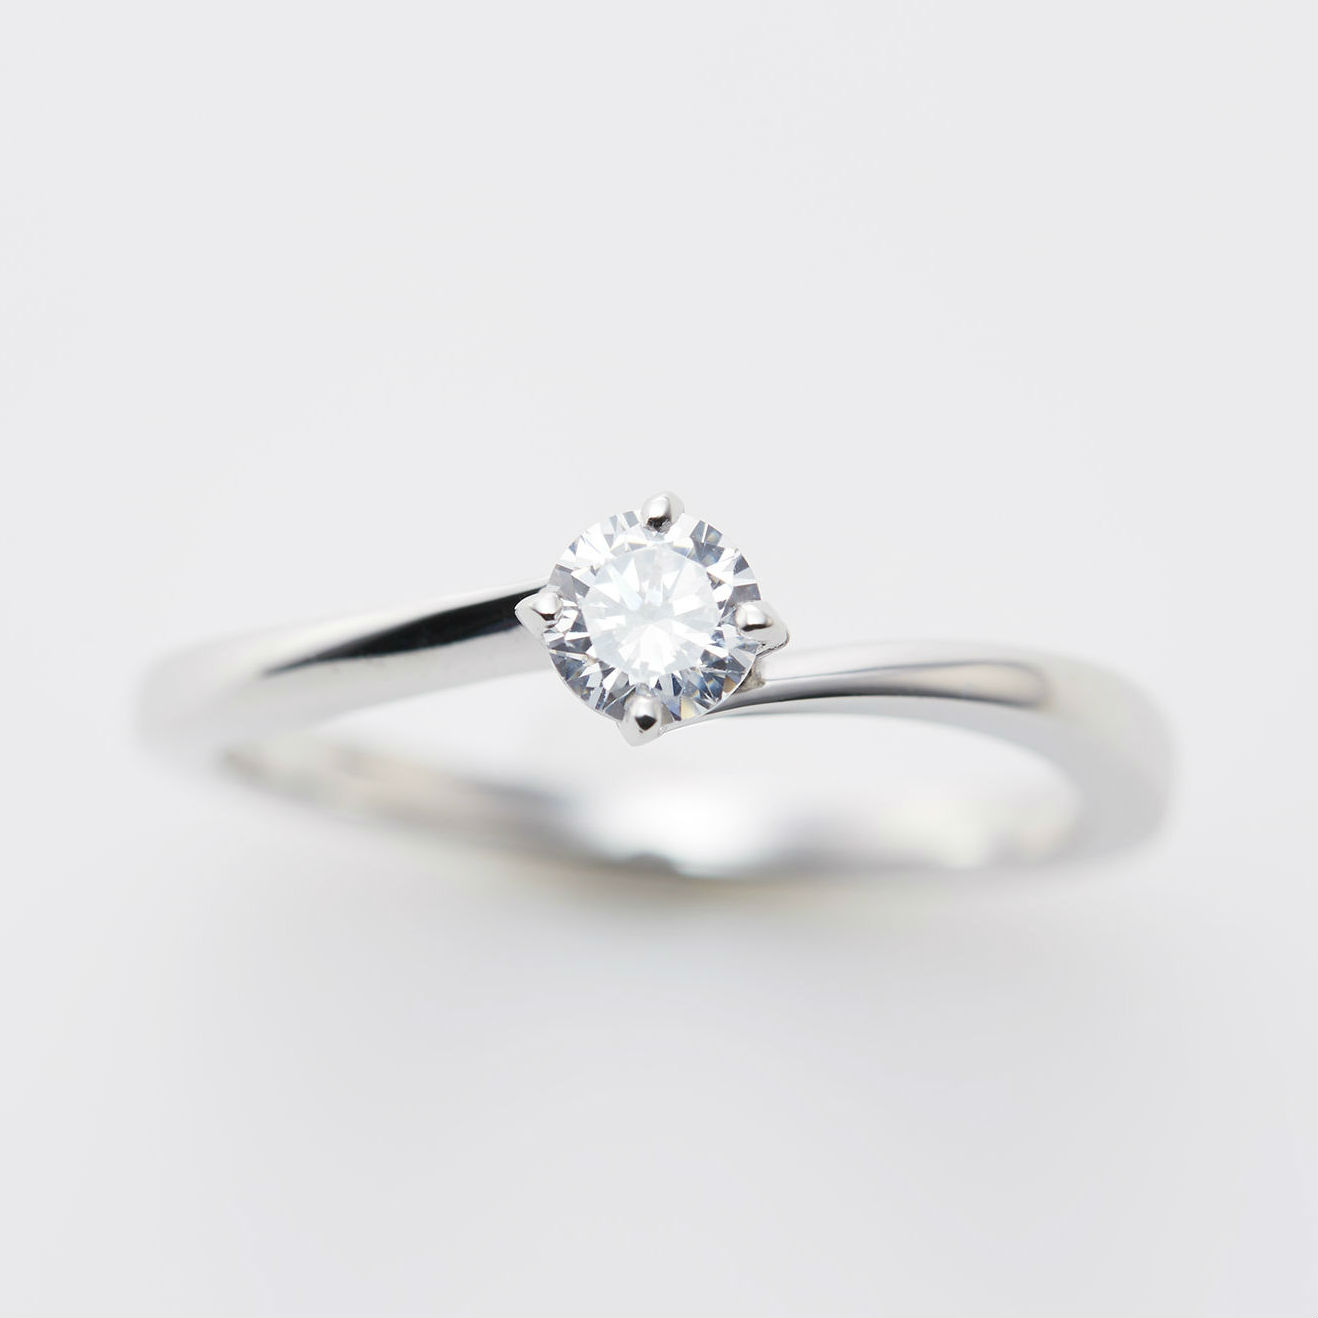 ウェーブデザインが人気のプラチナ婚約指輪